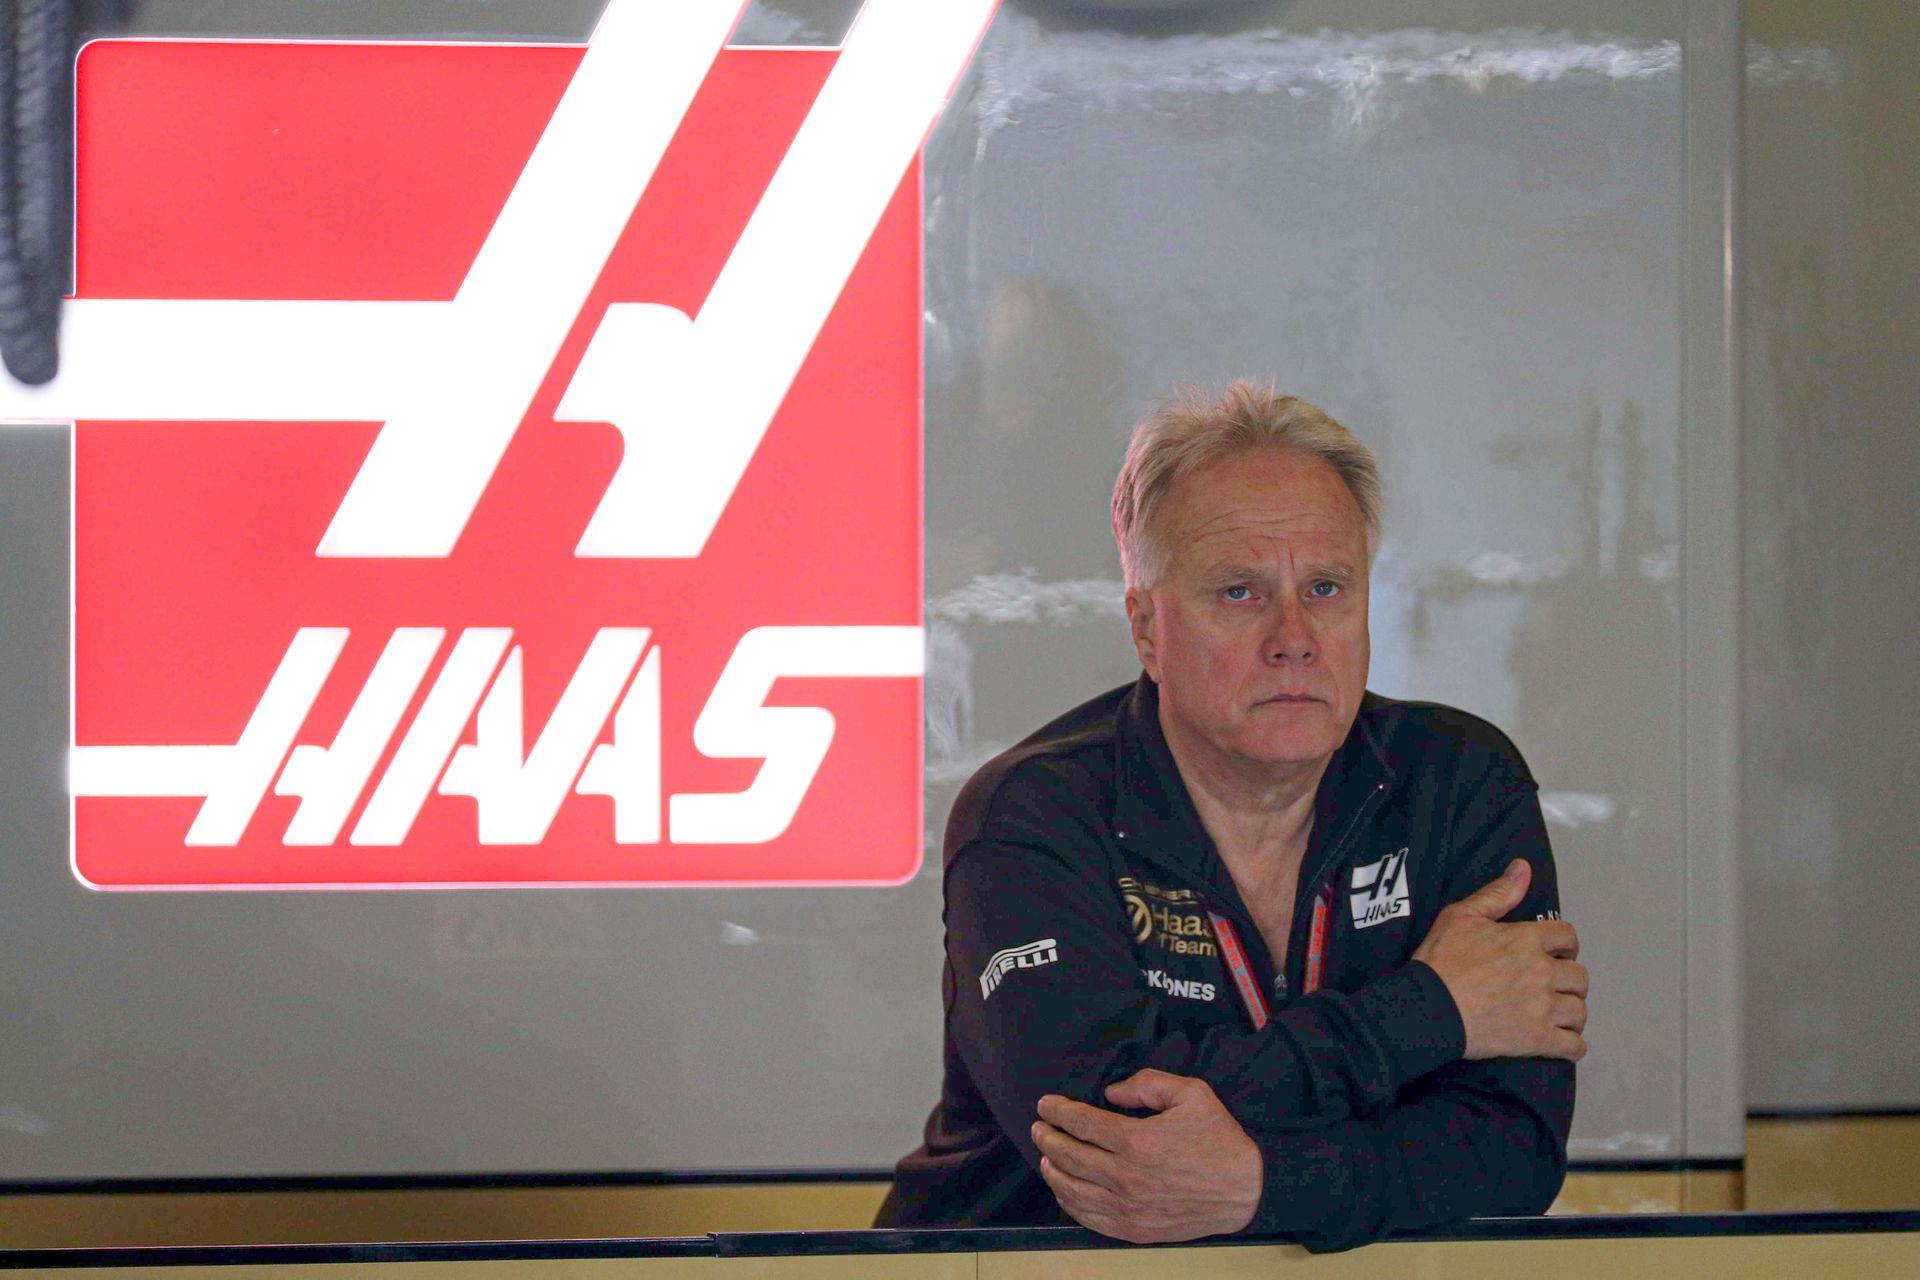 Gene Haas a csapatnak sokba kerülő balesetek miatt haragudott a kis Schumira /Fotó: Getty Images